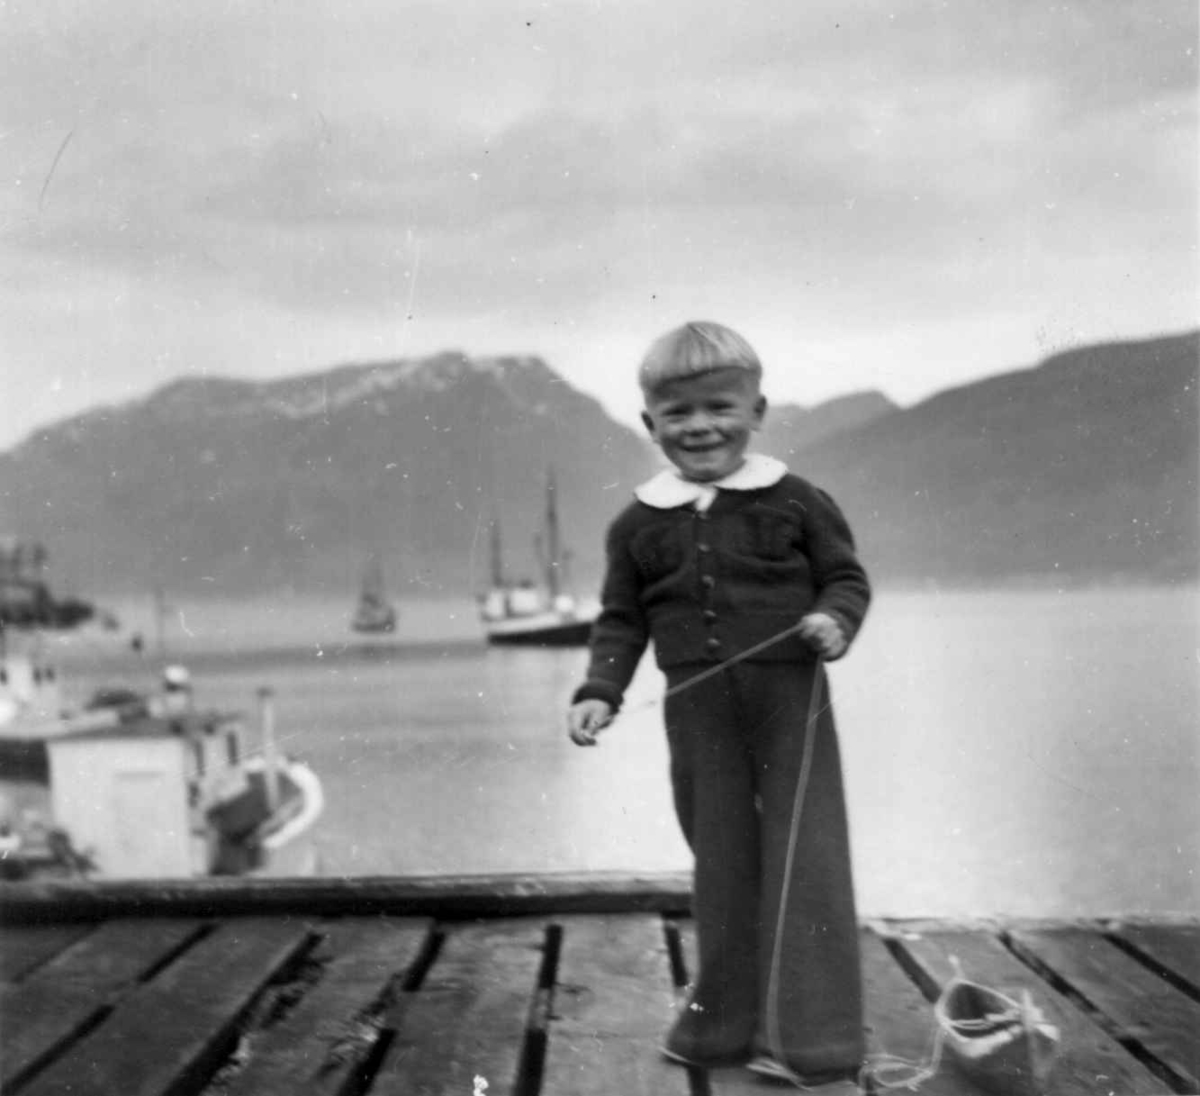 Sønn av Øistein og Margit Andersen. Liten gutt på brygge. Samuelsberg 1955.